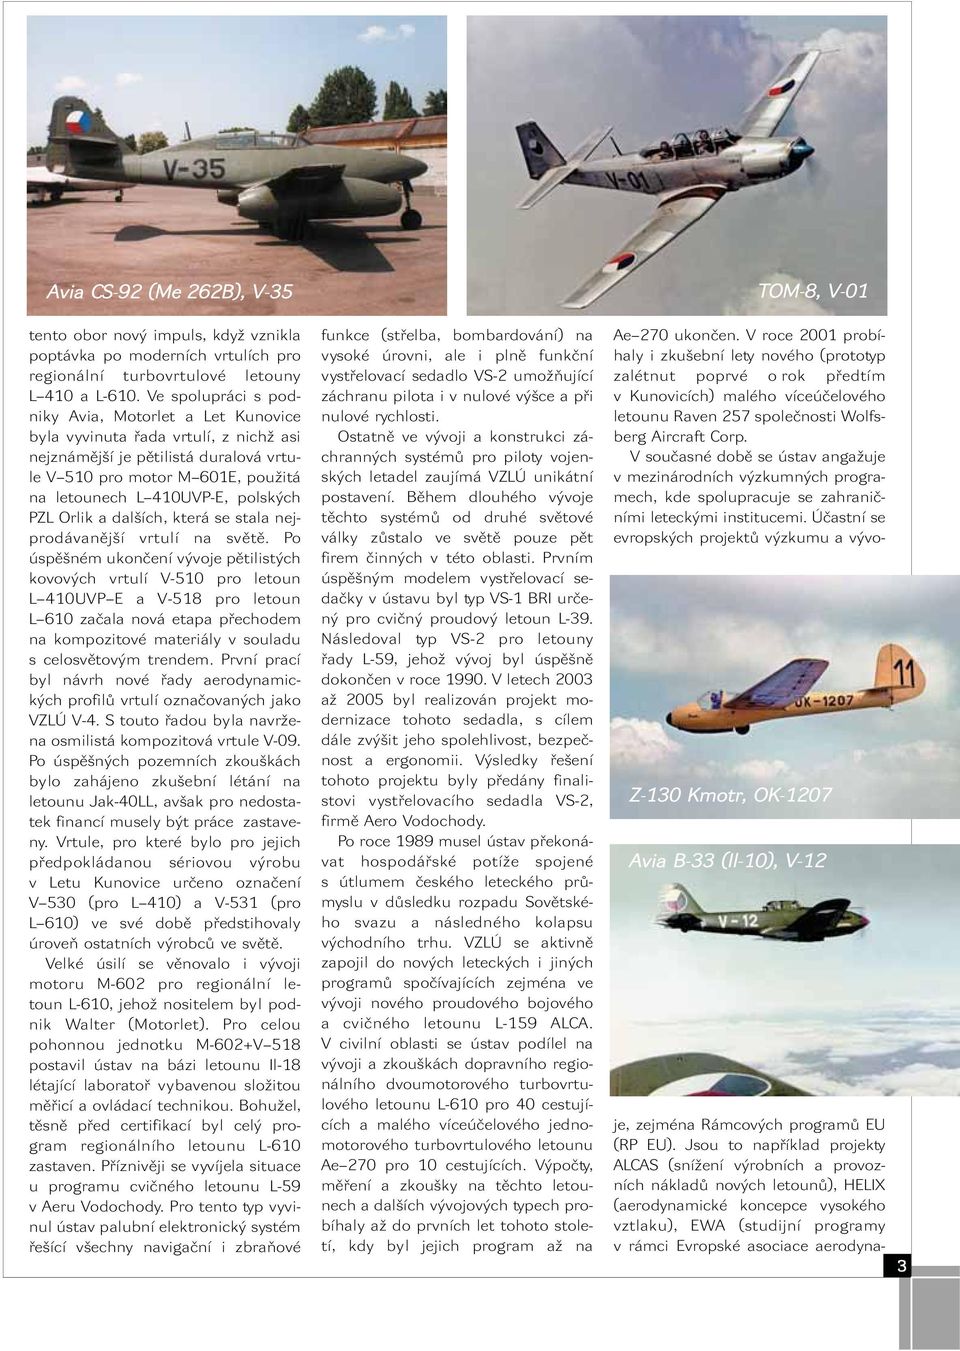 PZL Orlik a dalších, která se stala nejprodávanější vrtulí na světě.